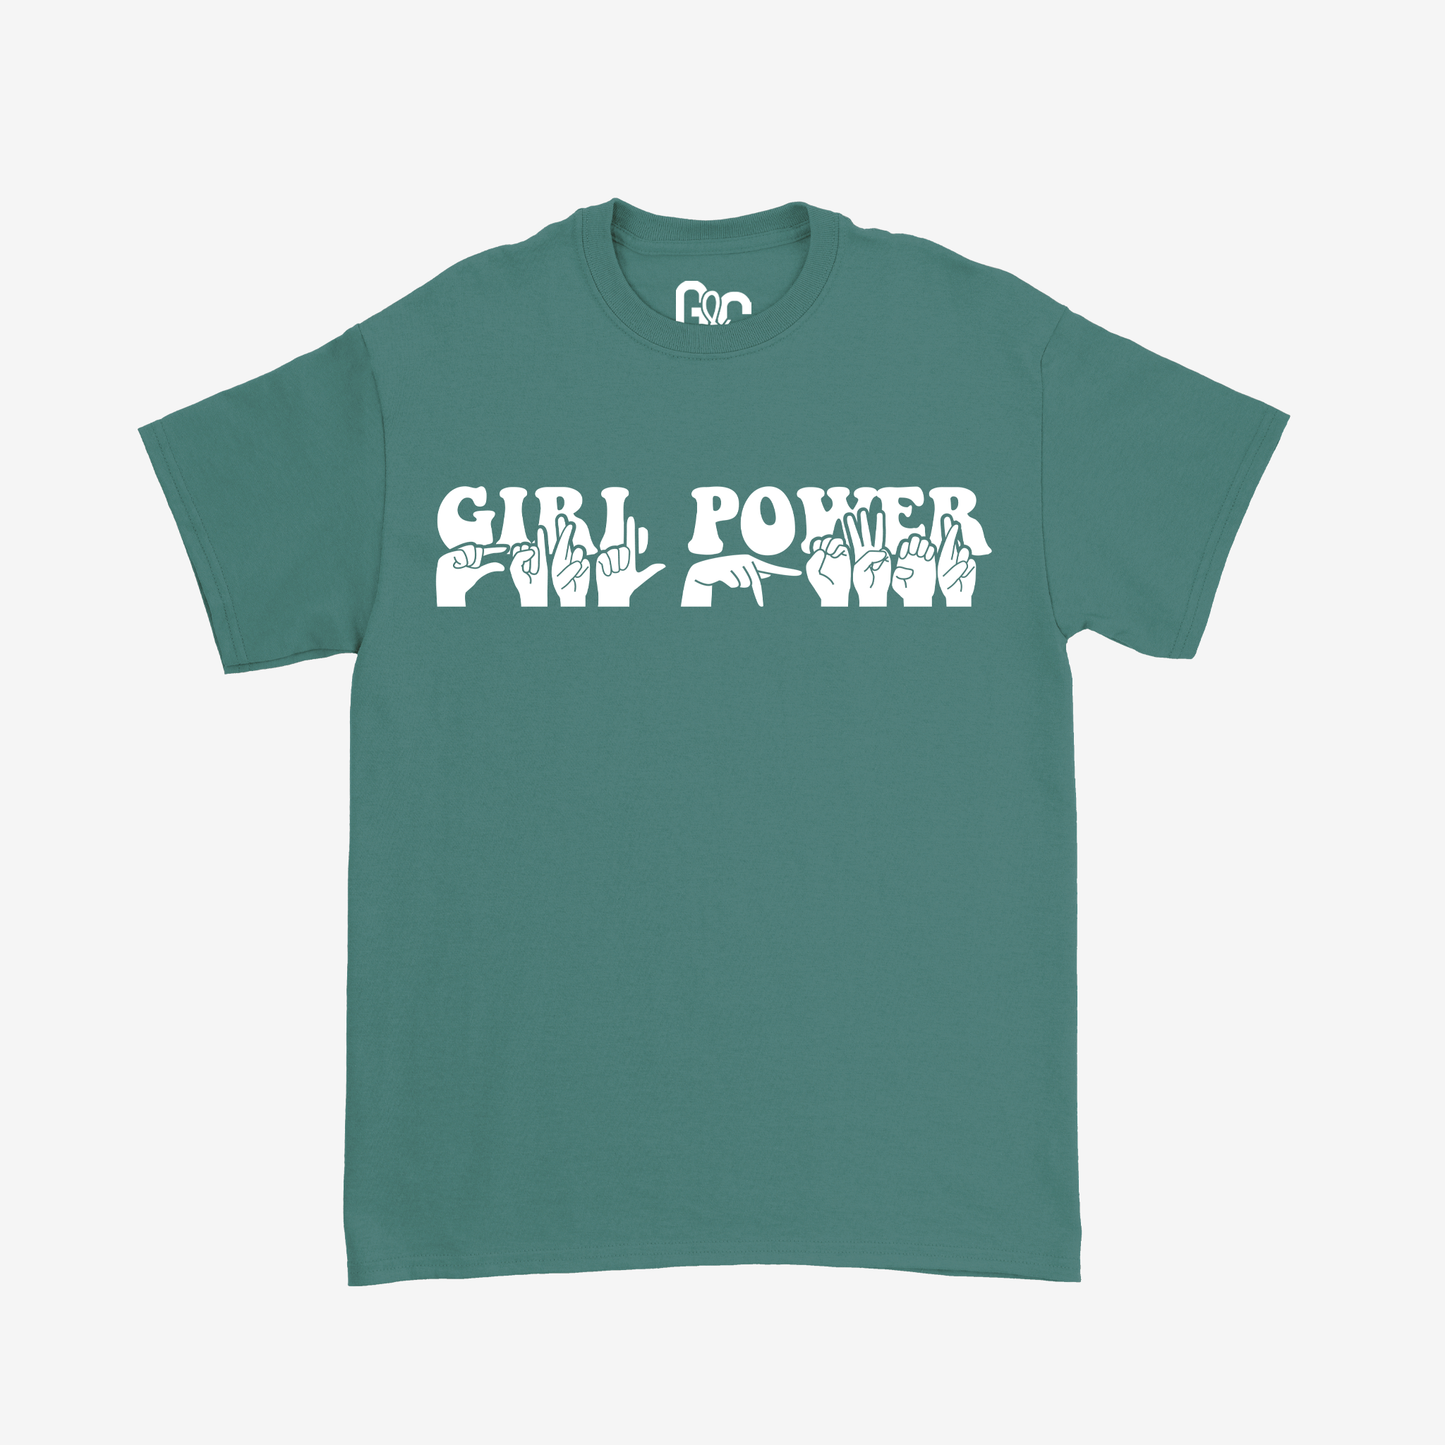 Girl Power Tee